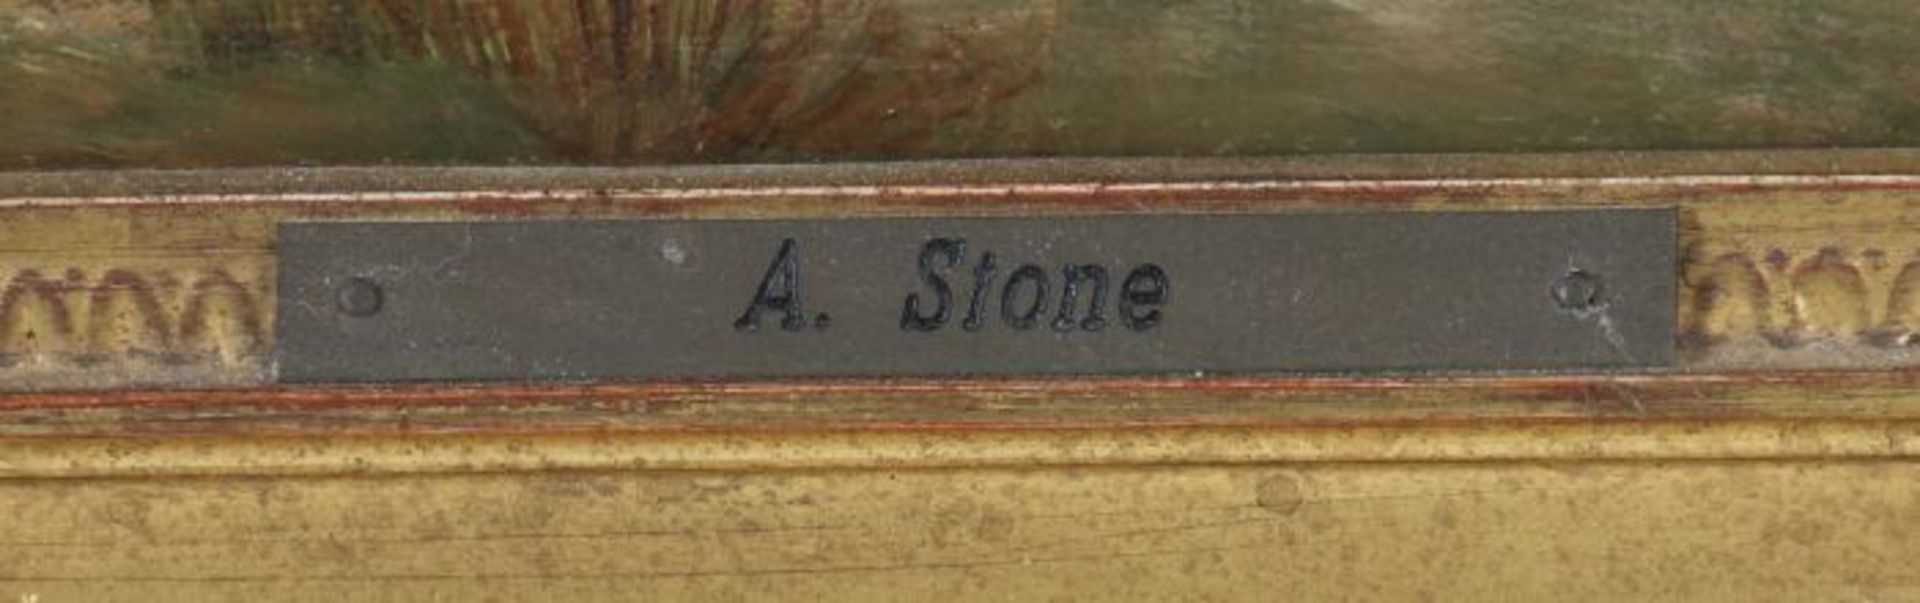 Stone, Alfred 1840 - ?, englischer - Bild 3 aus 4